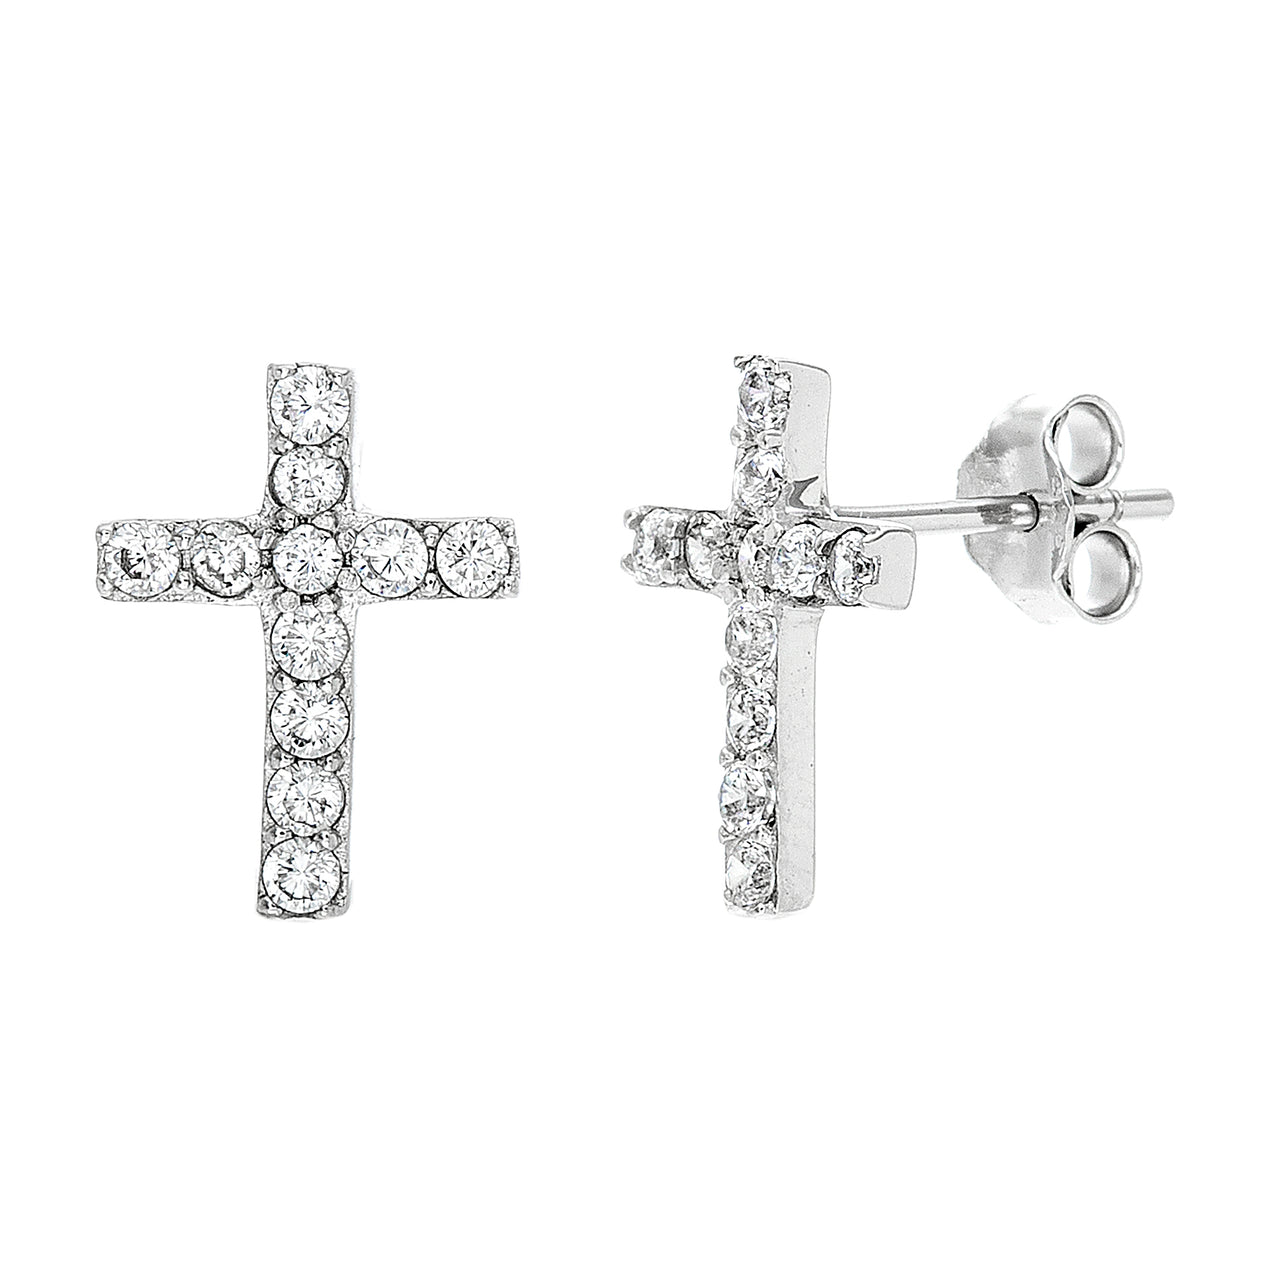 My Bible Cubic Zirconia Cross Stud Earrings in Sterling Silver